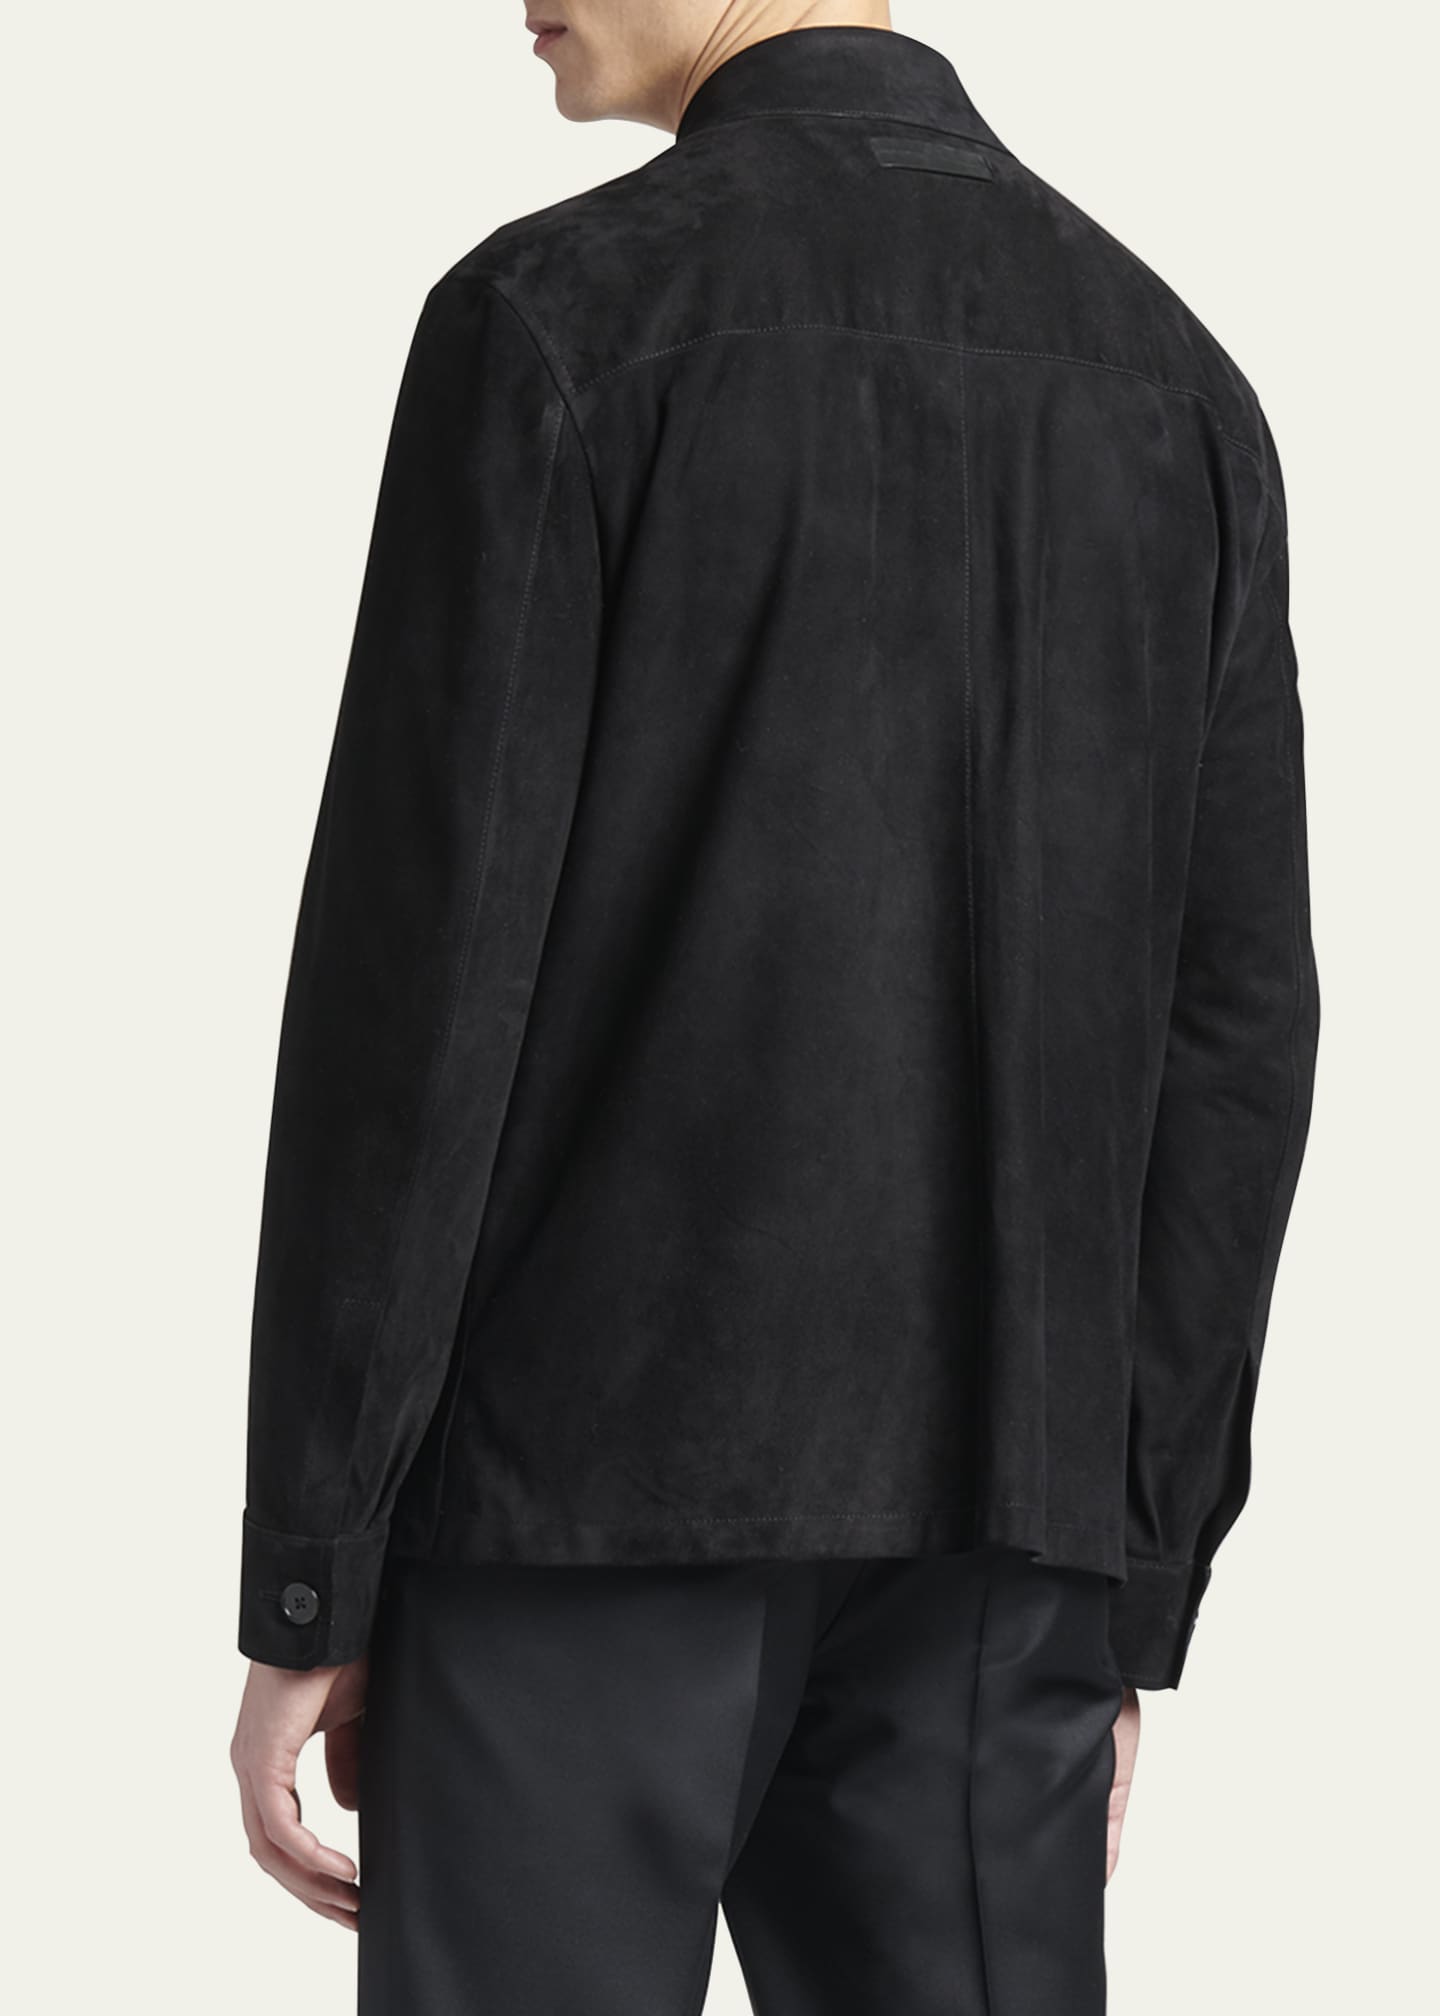 ZEGNA Men's Suede Leather Overshirt Jacket - Bergdorf Goodman